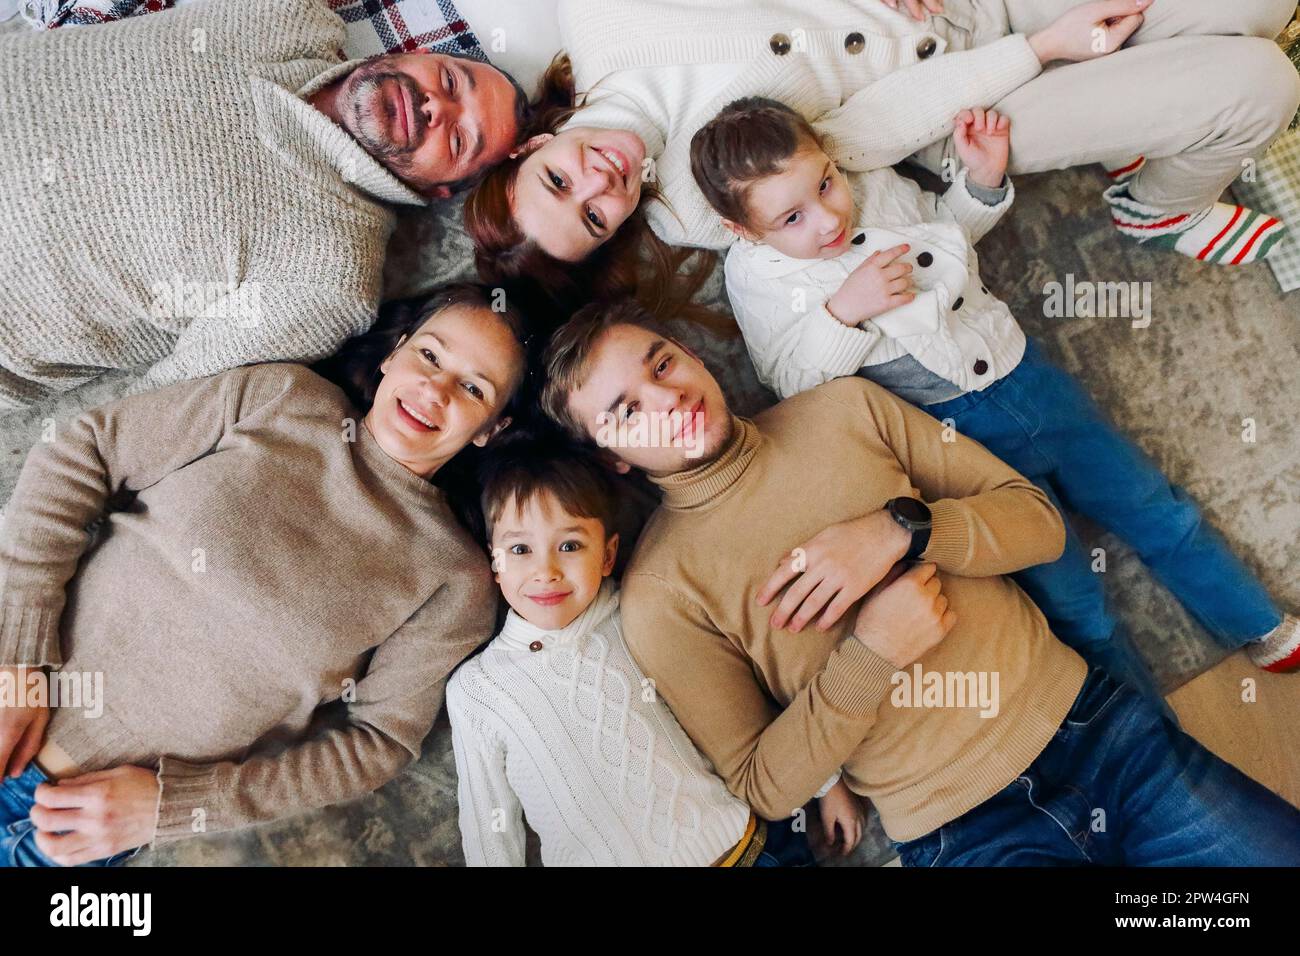 Draufsicht auf eine glückliche, große, mehrgenerationale Familie, die im Kreis auf dem Boden liegt und vor der Kamera lächelt, Bindungen stärkt und gesunde Beziehungen aufbaut Stockfoto